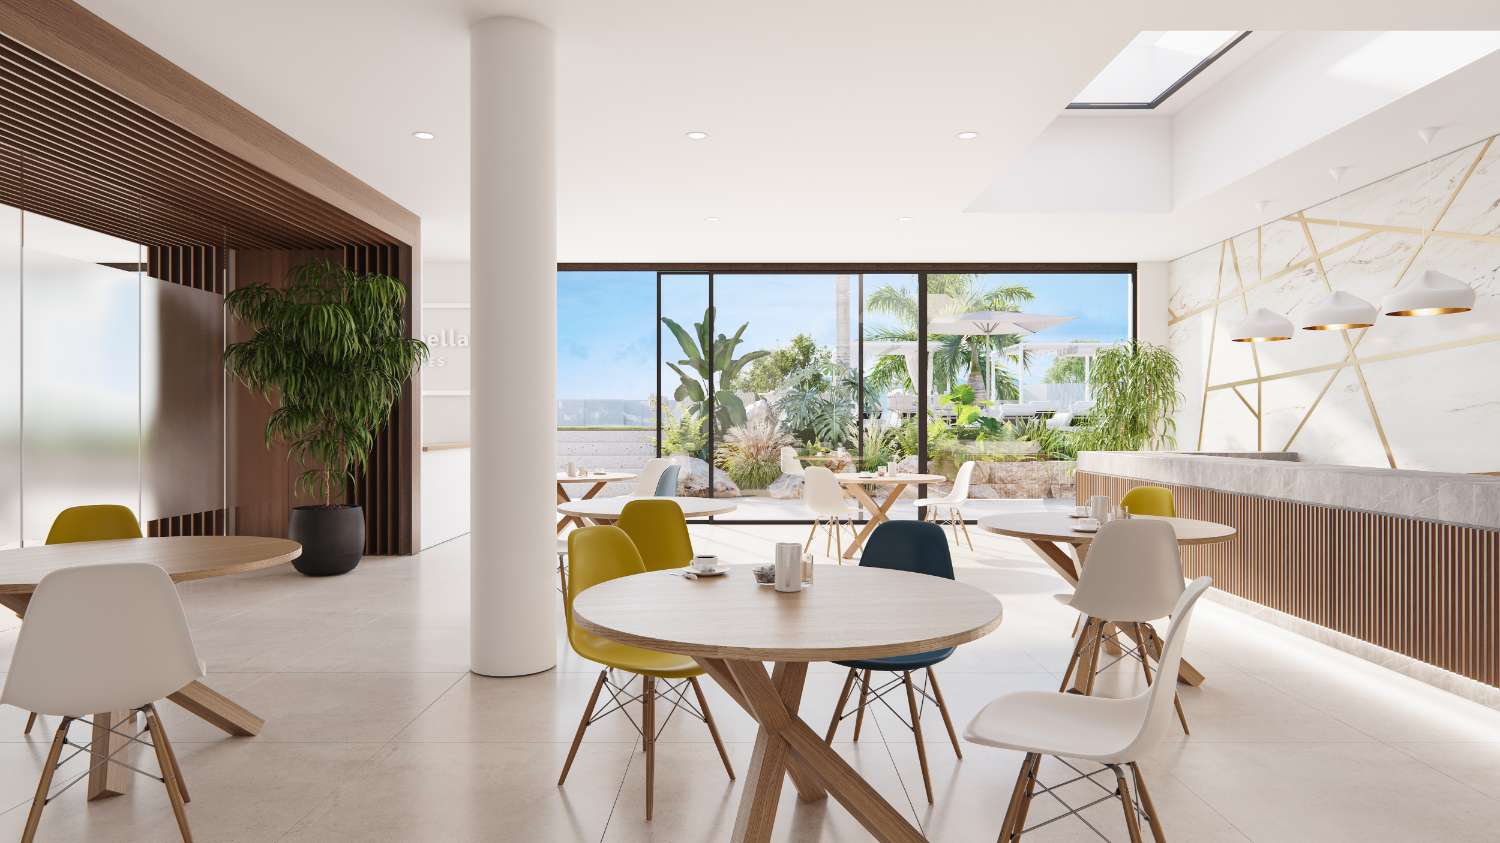 Geräumige und exklusive Vier-Zimmer-Wohnung mit privatem Garten von 221 m2 im Resort in Marbella, in der ersten Reihe des Golfplatzes